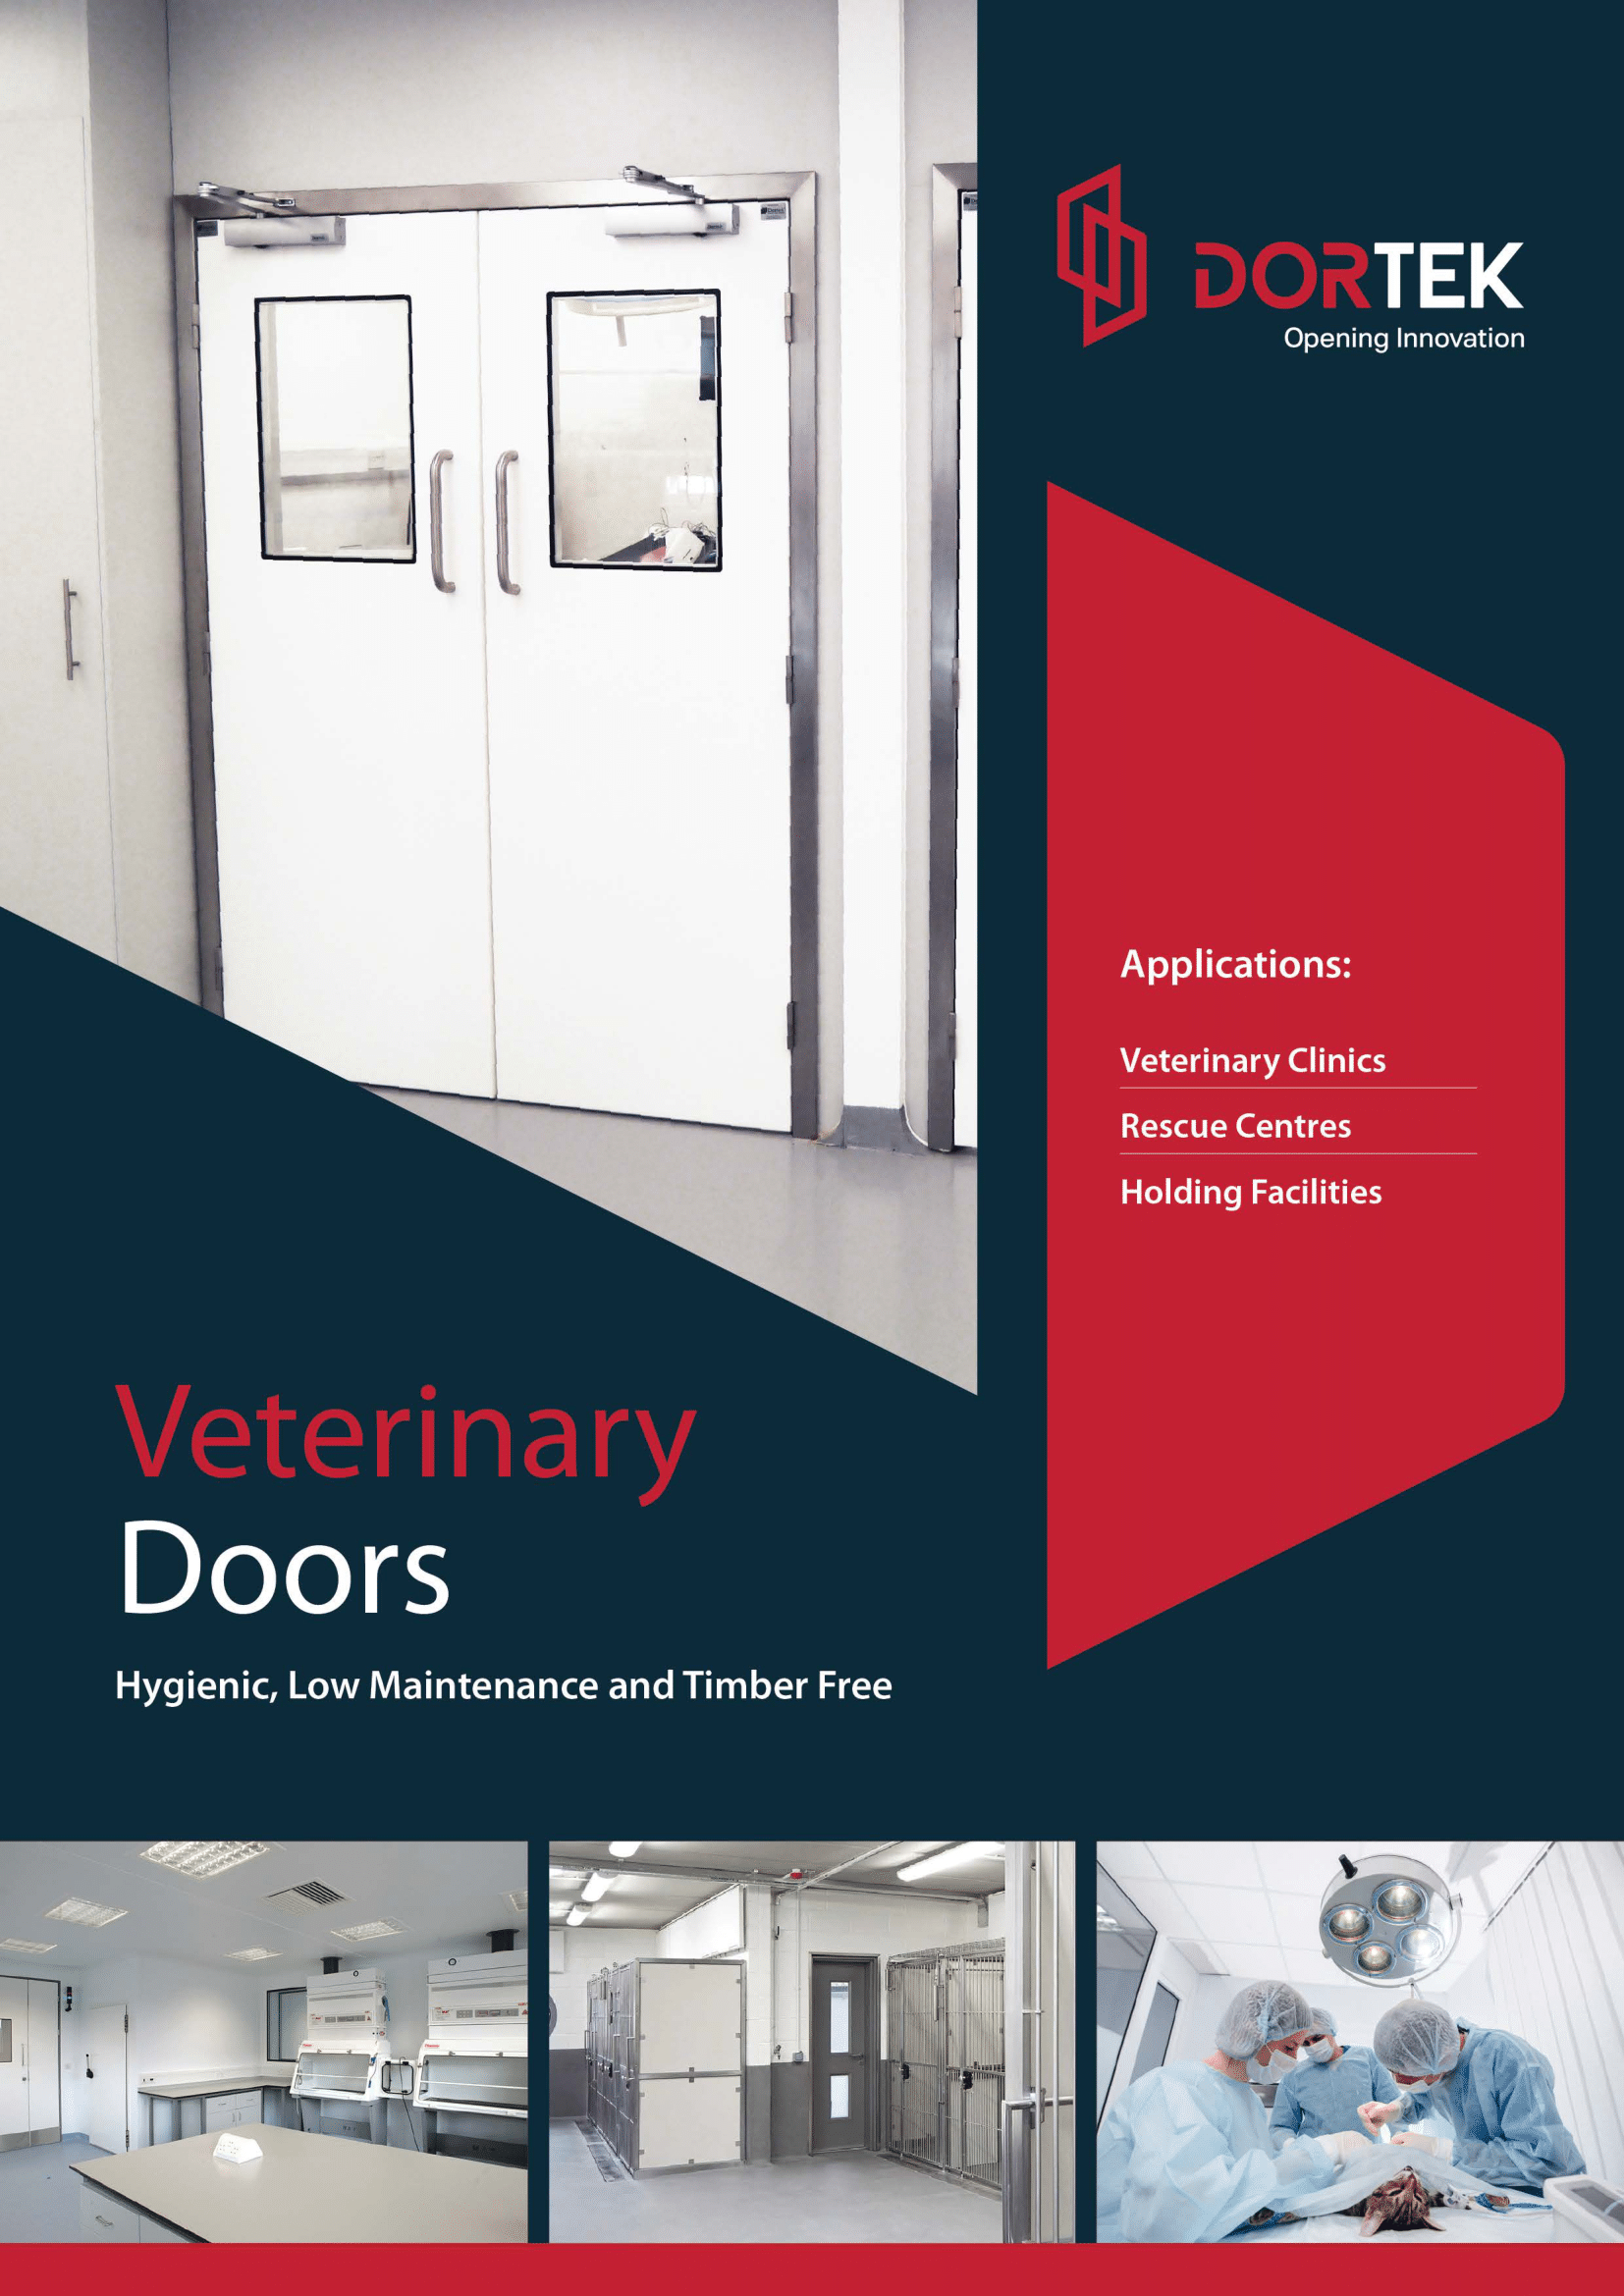 Dortek veterinary doors brochure